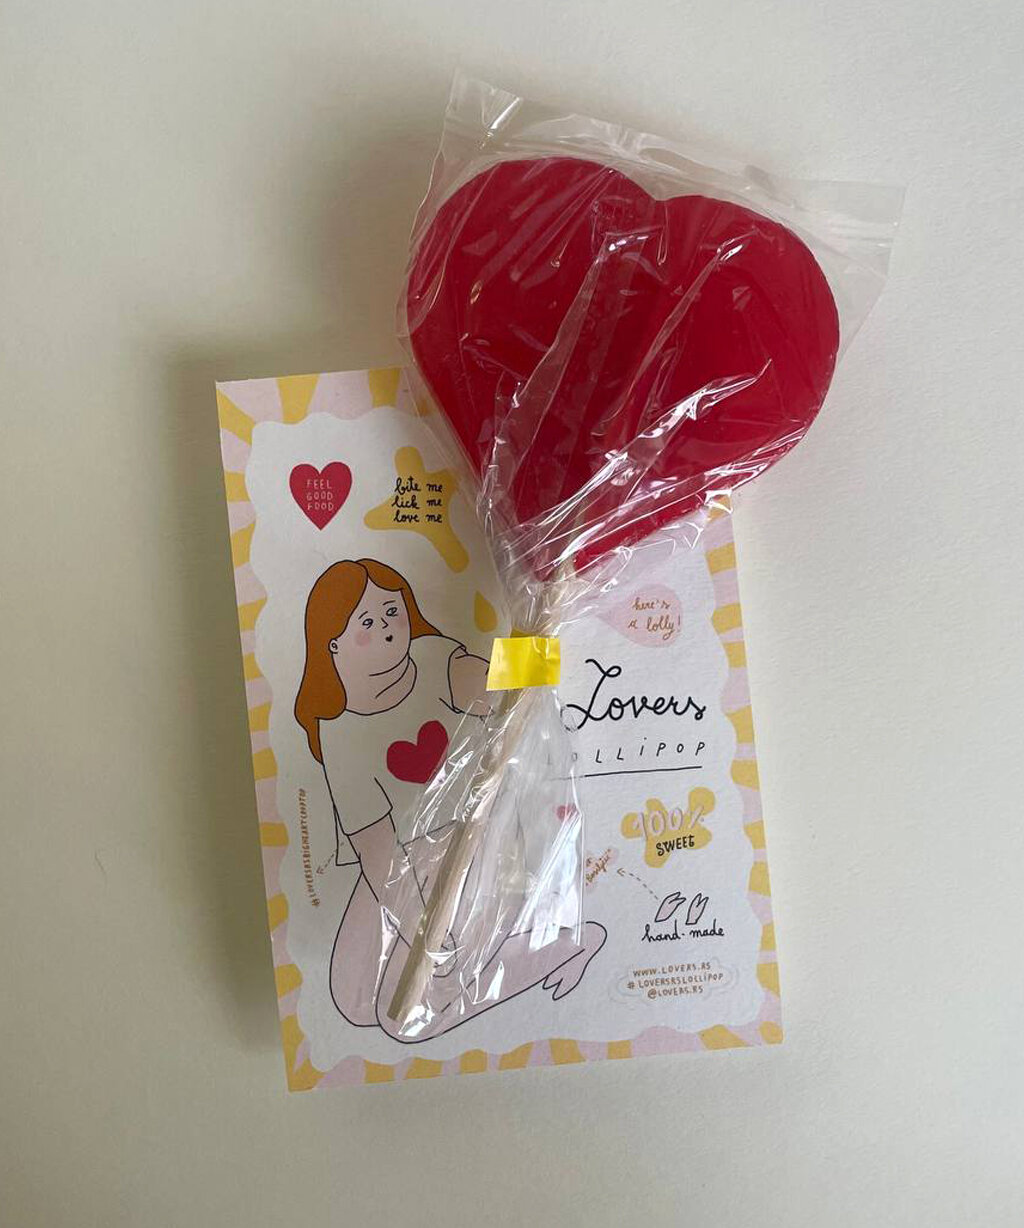 Heart Lollipop